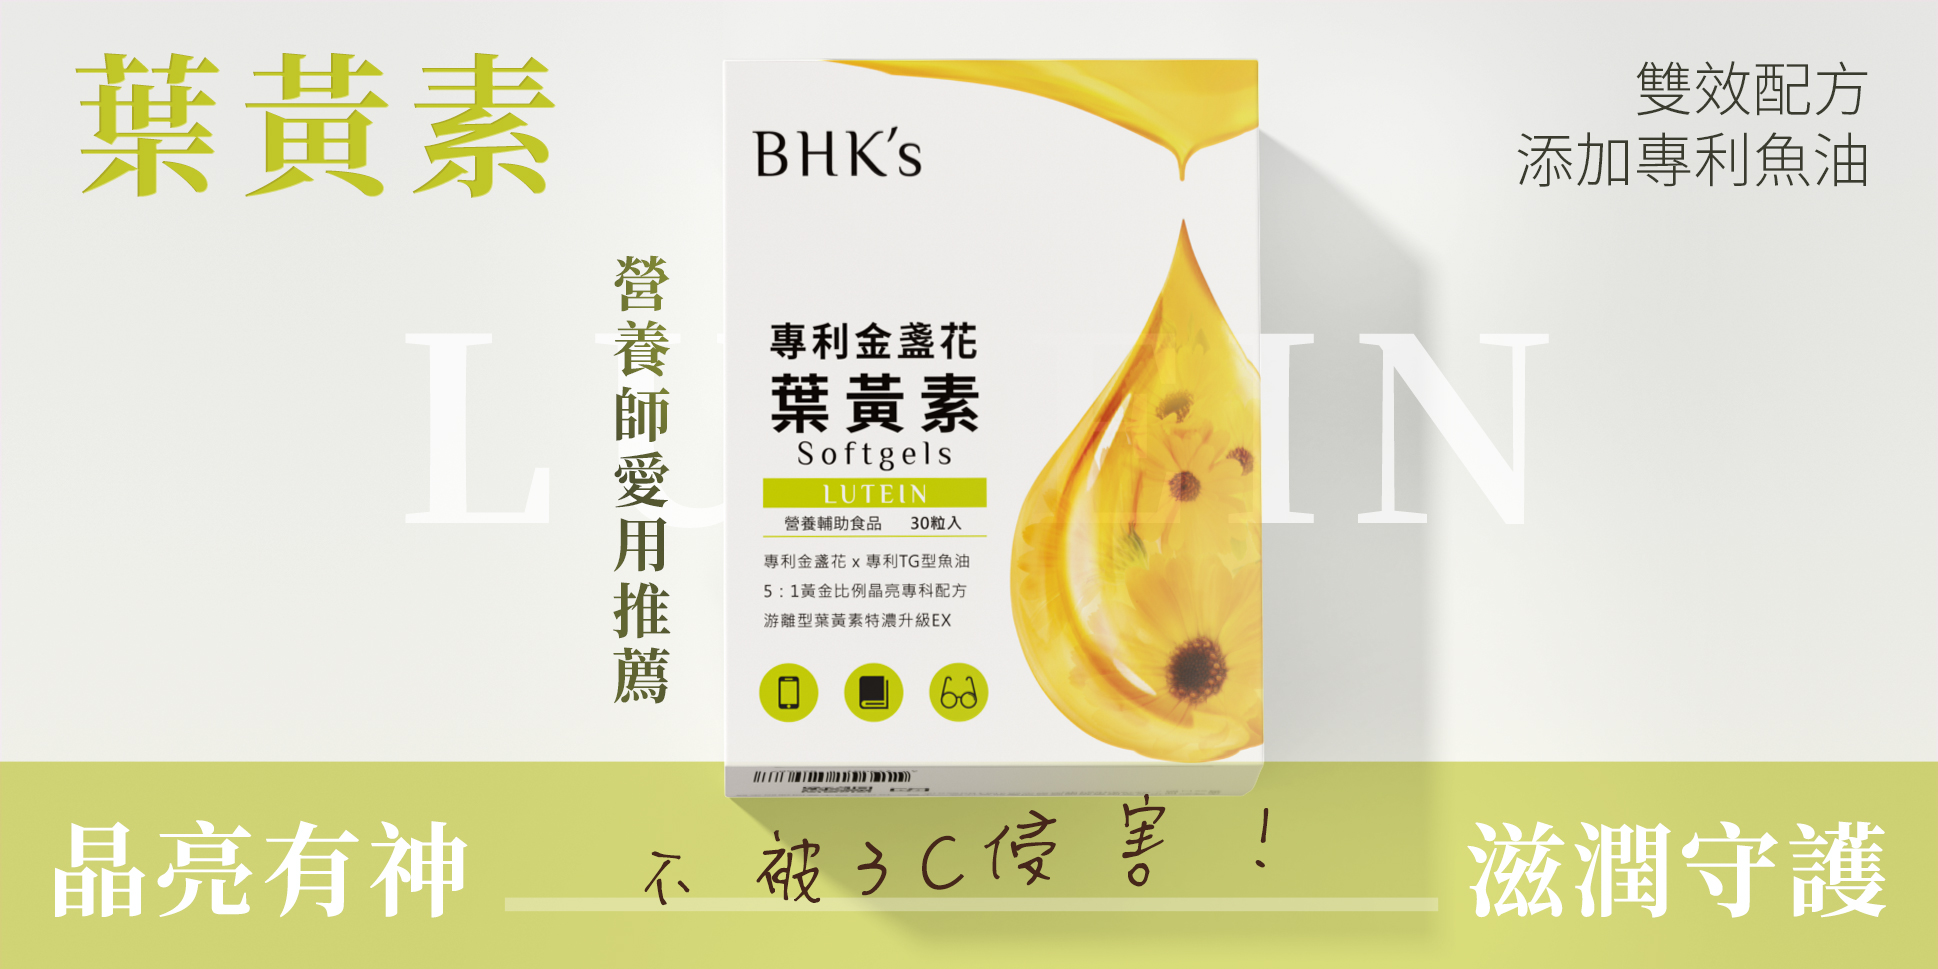 人氣熱銷 - BHK’s 無瑕机力 官方網站︱台灣保健領導品牌